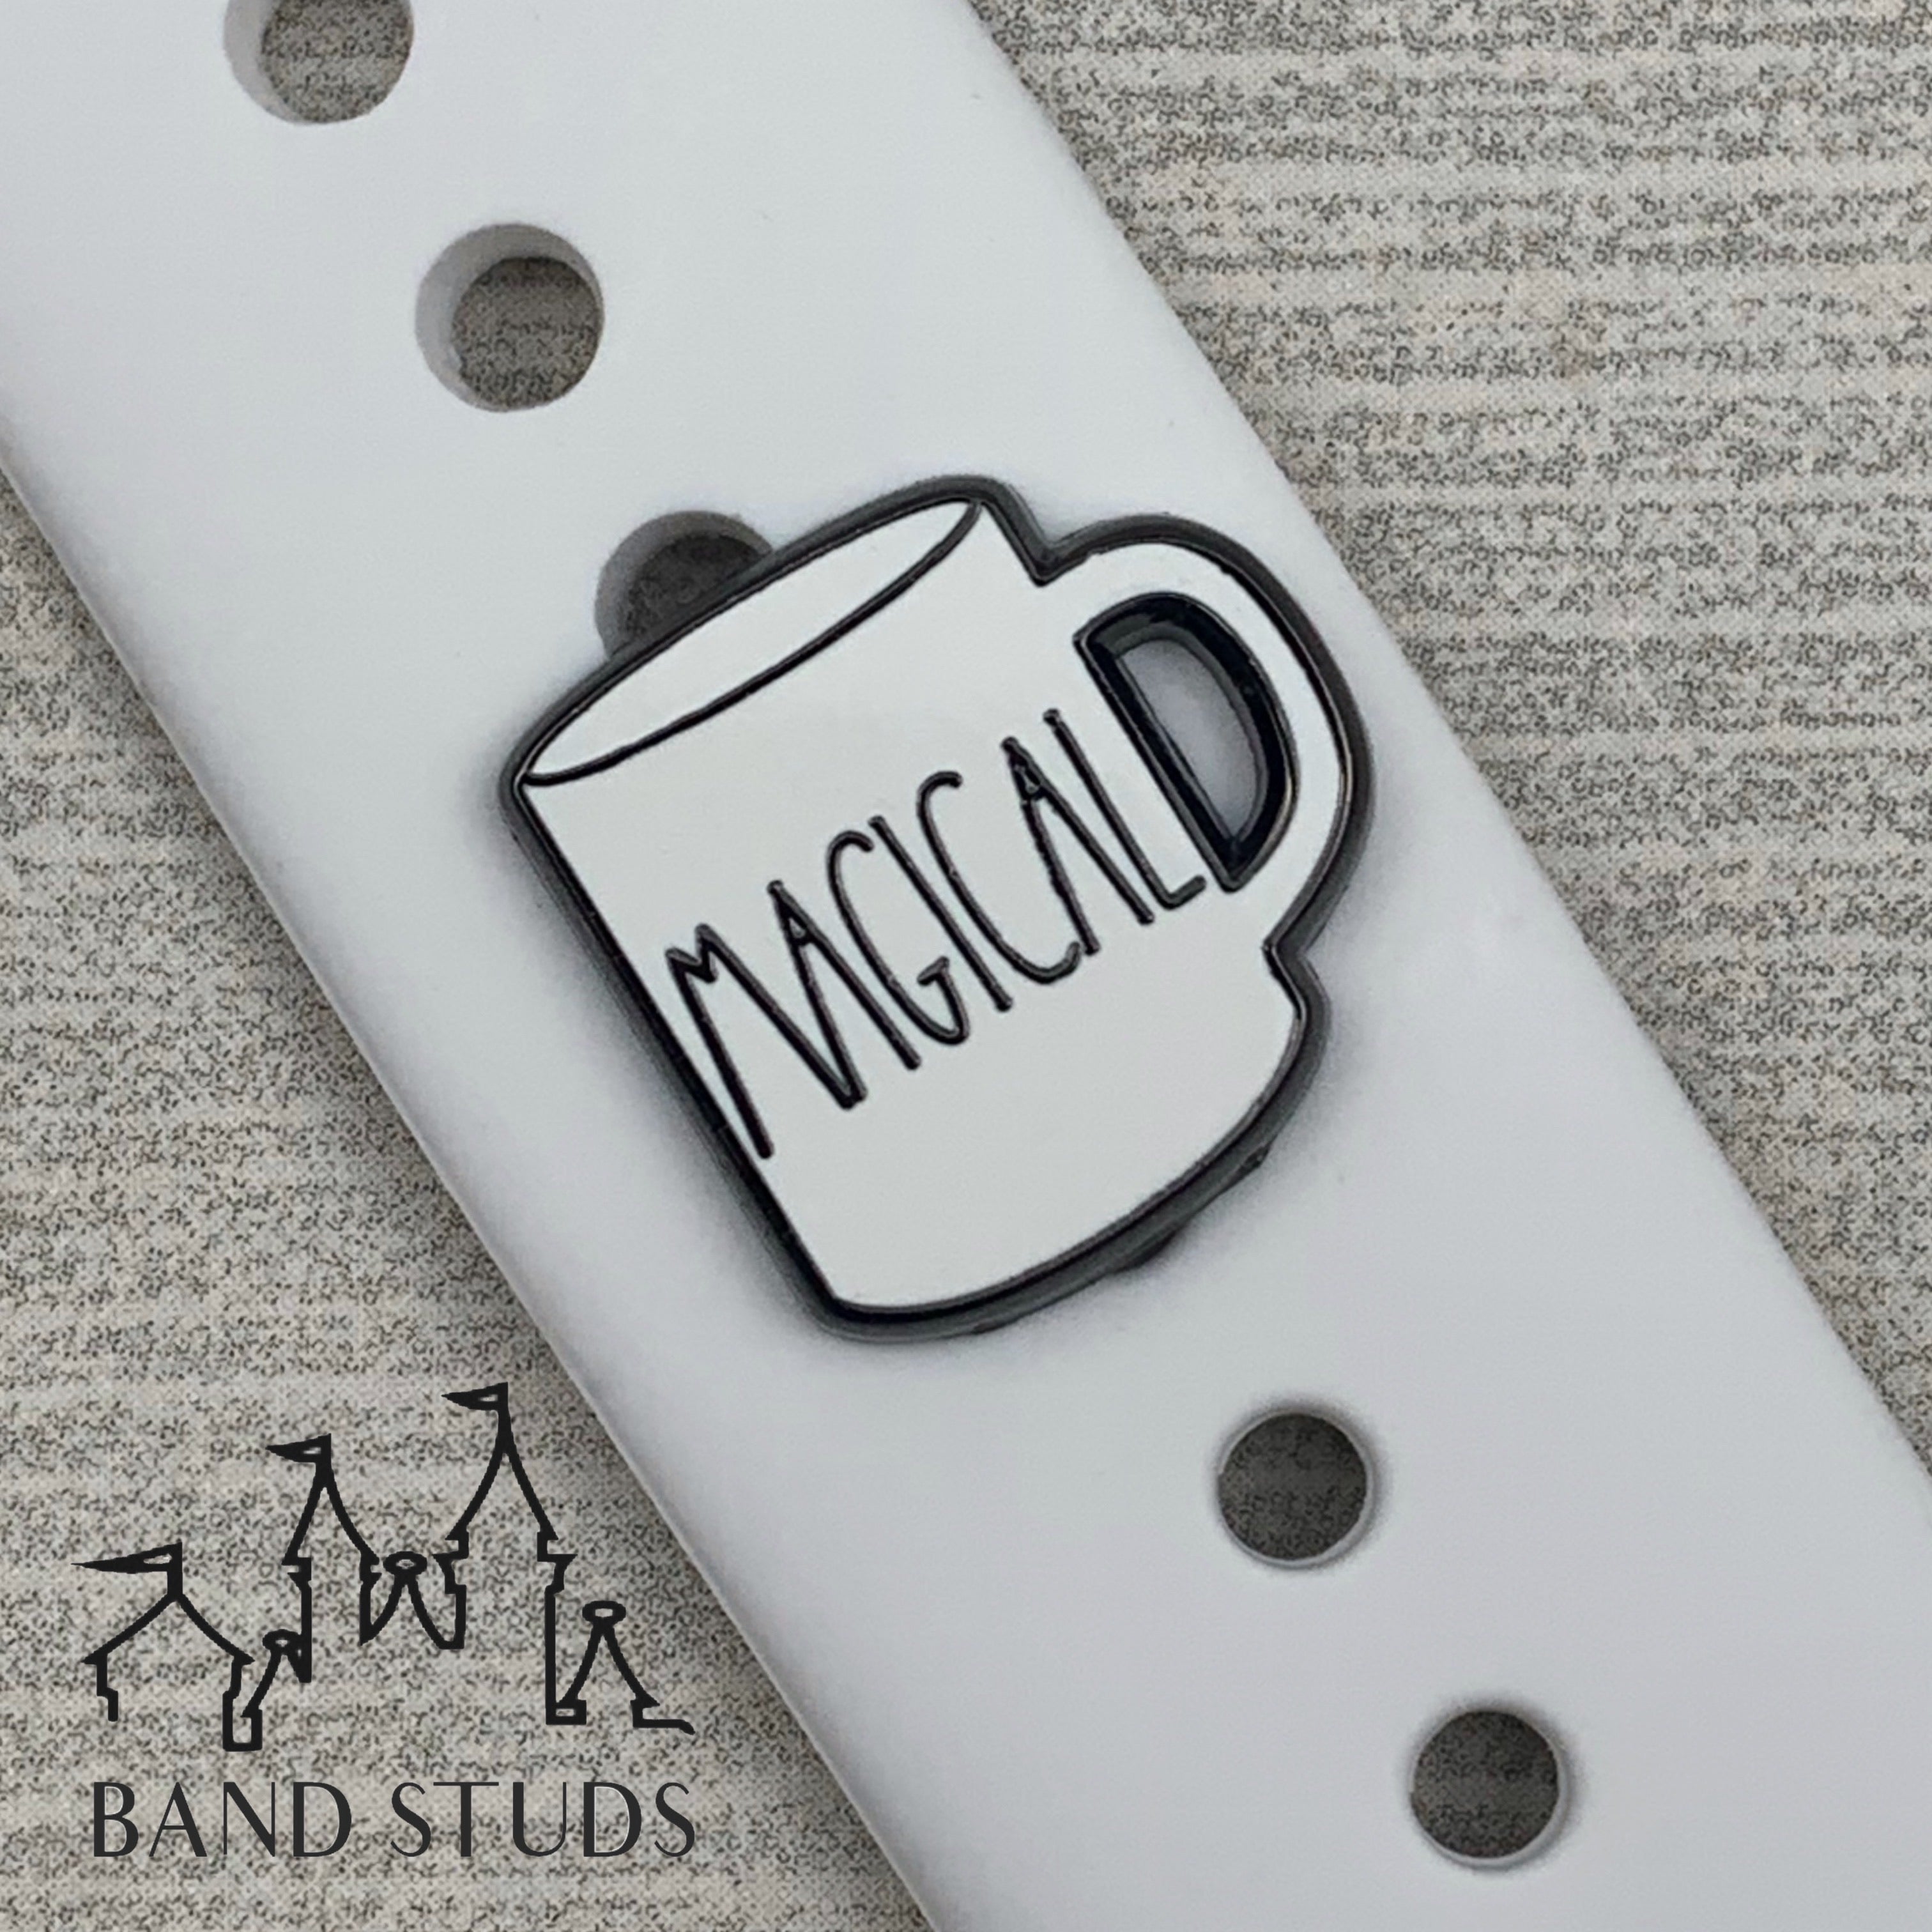 Band Stud® - Coffee Collection - Rae Dunn Mugs MARKDOWN